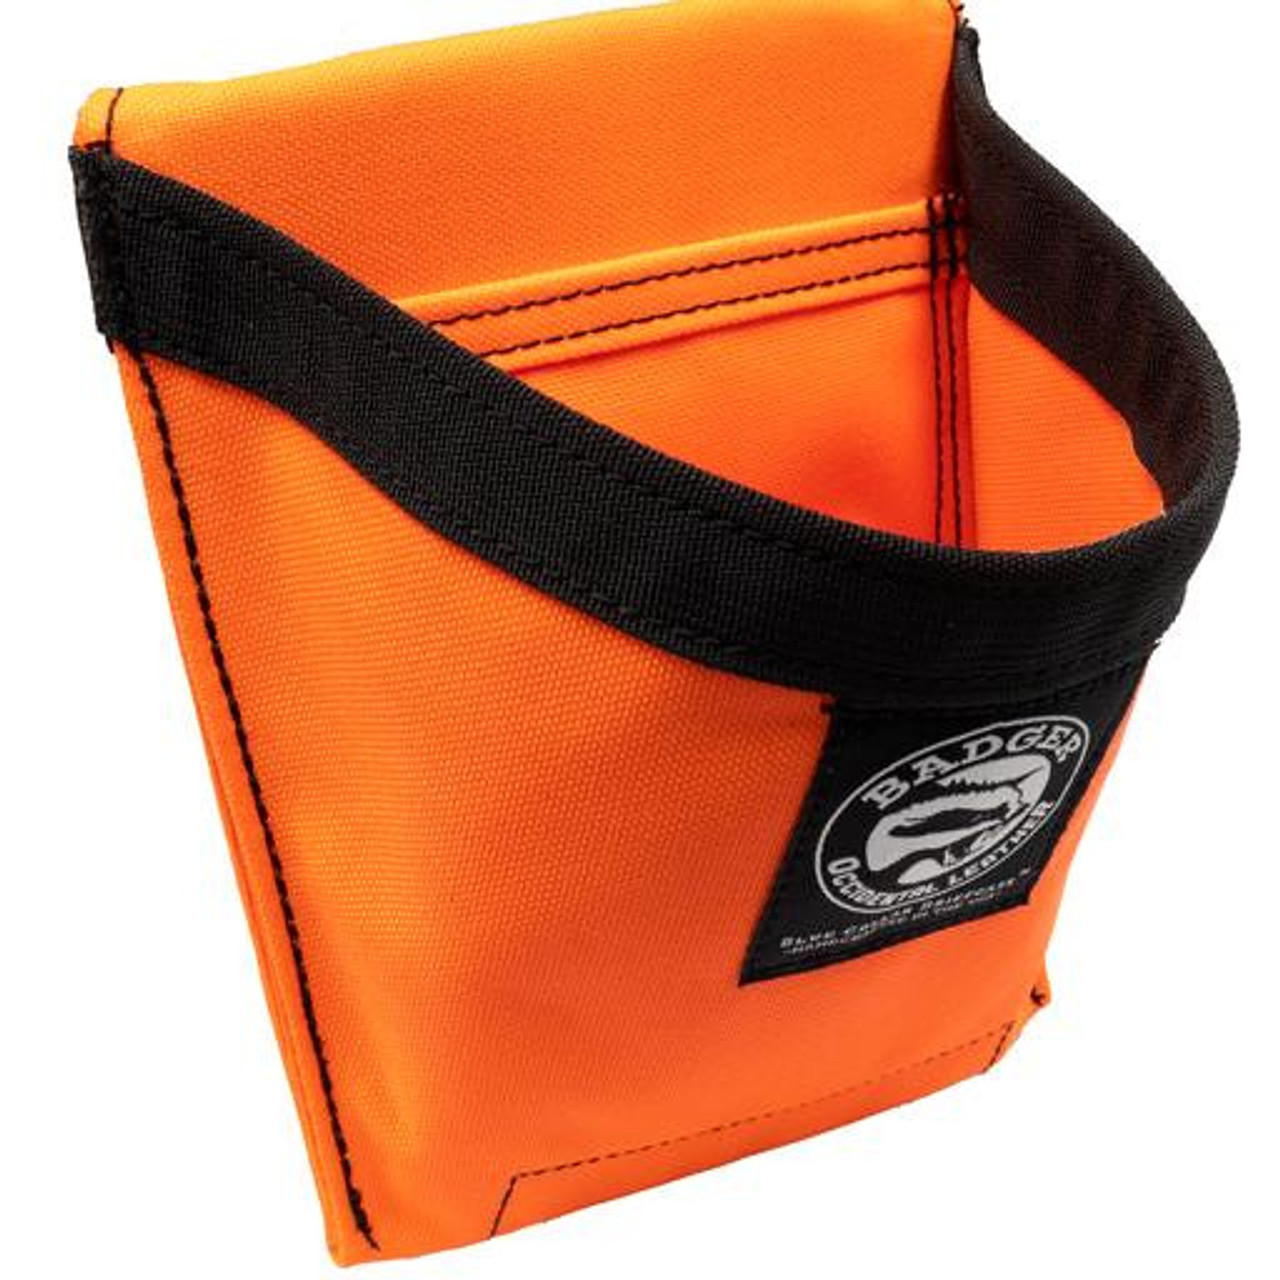 Badger Accessory Pouch Hi-Vis Orange